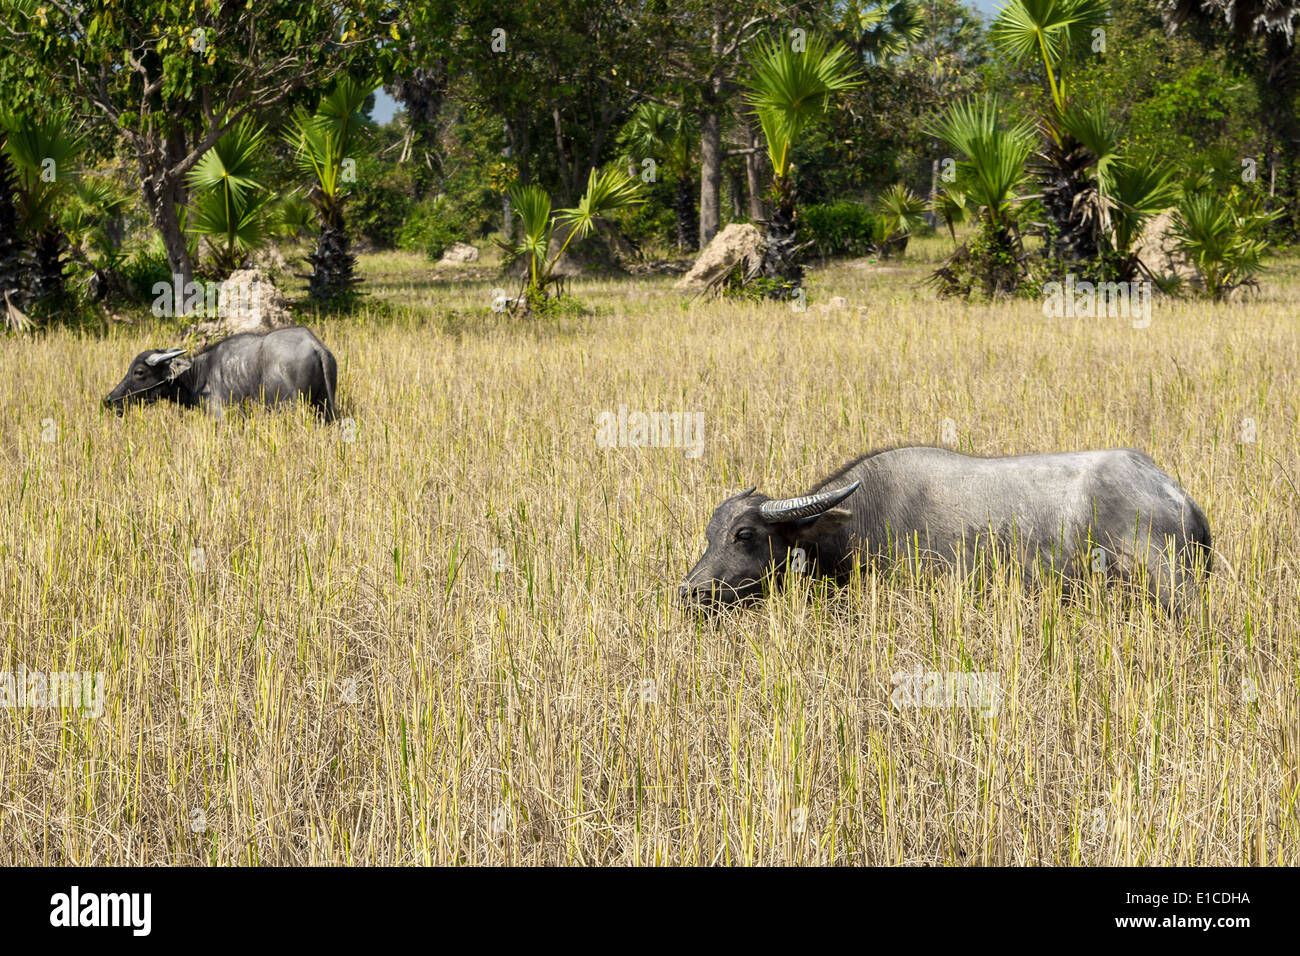 El salvaje los búfalos (Bubalus arnee), también llamado búfalo asiático y búfalo asiático, es un gran bovino nativa del sureste asiático Foto de stock